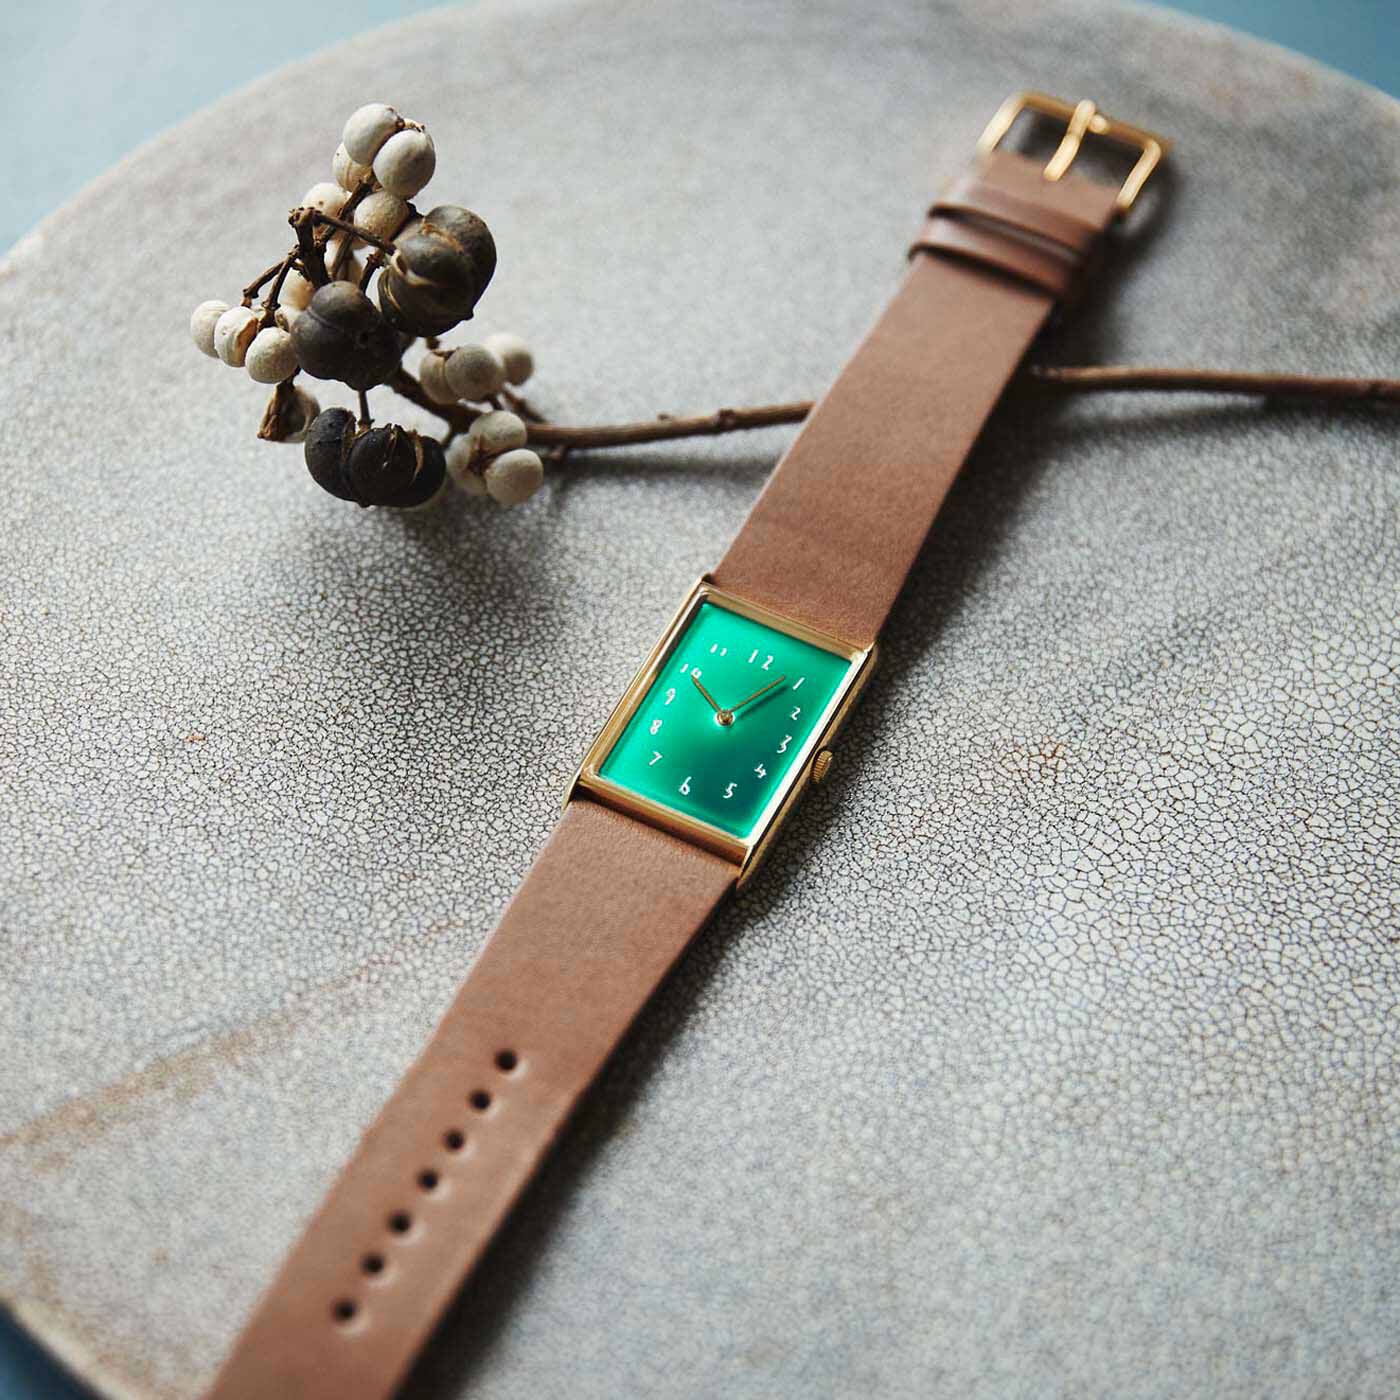 ＆Stories|金沢の時計職人が手掛けた 聖なる泉の翠色に見惚れる腕時計〈ブラウン〉[時計：日本製]|文字盤の深い緑色は、誰も立ち入ることのできない、聖域のように静かな水面を思わせます。